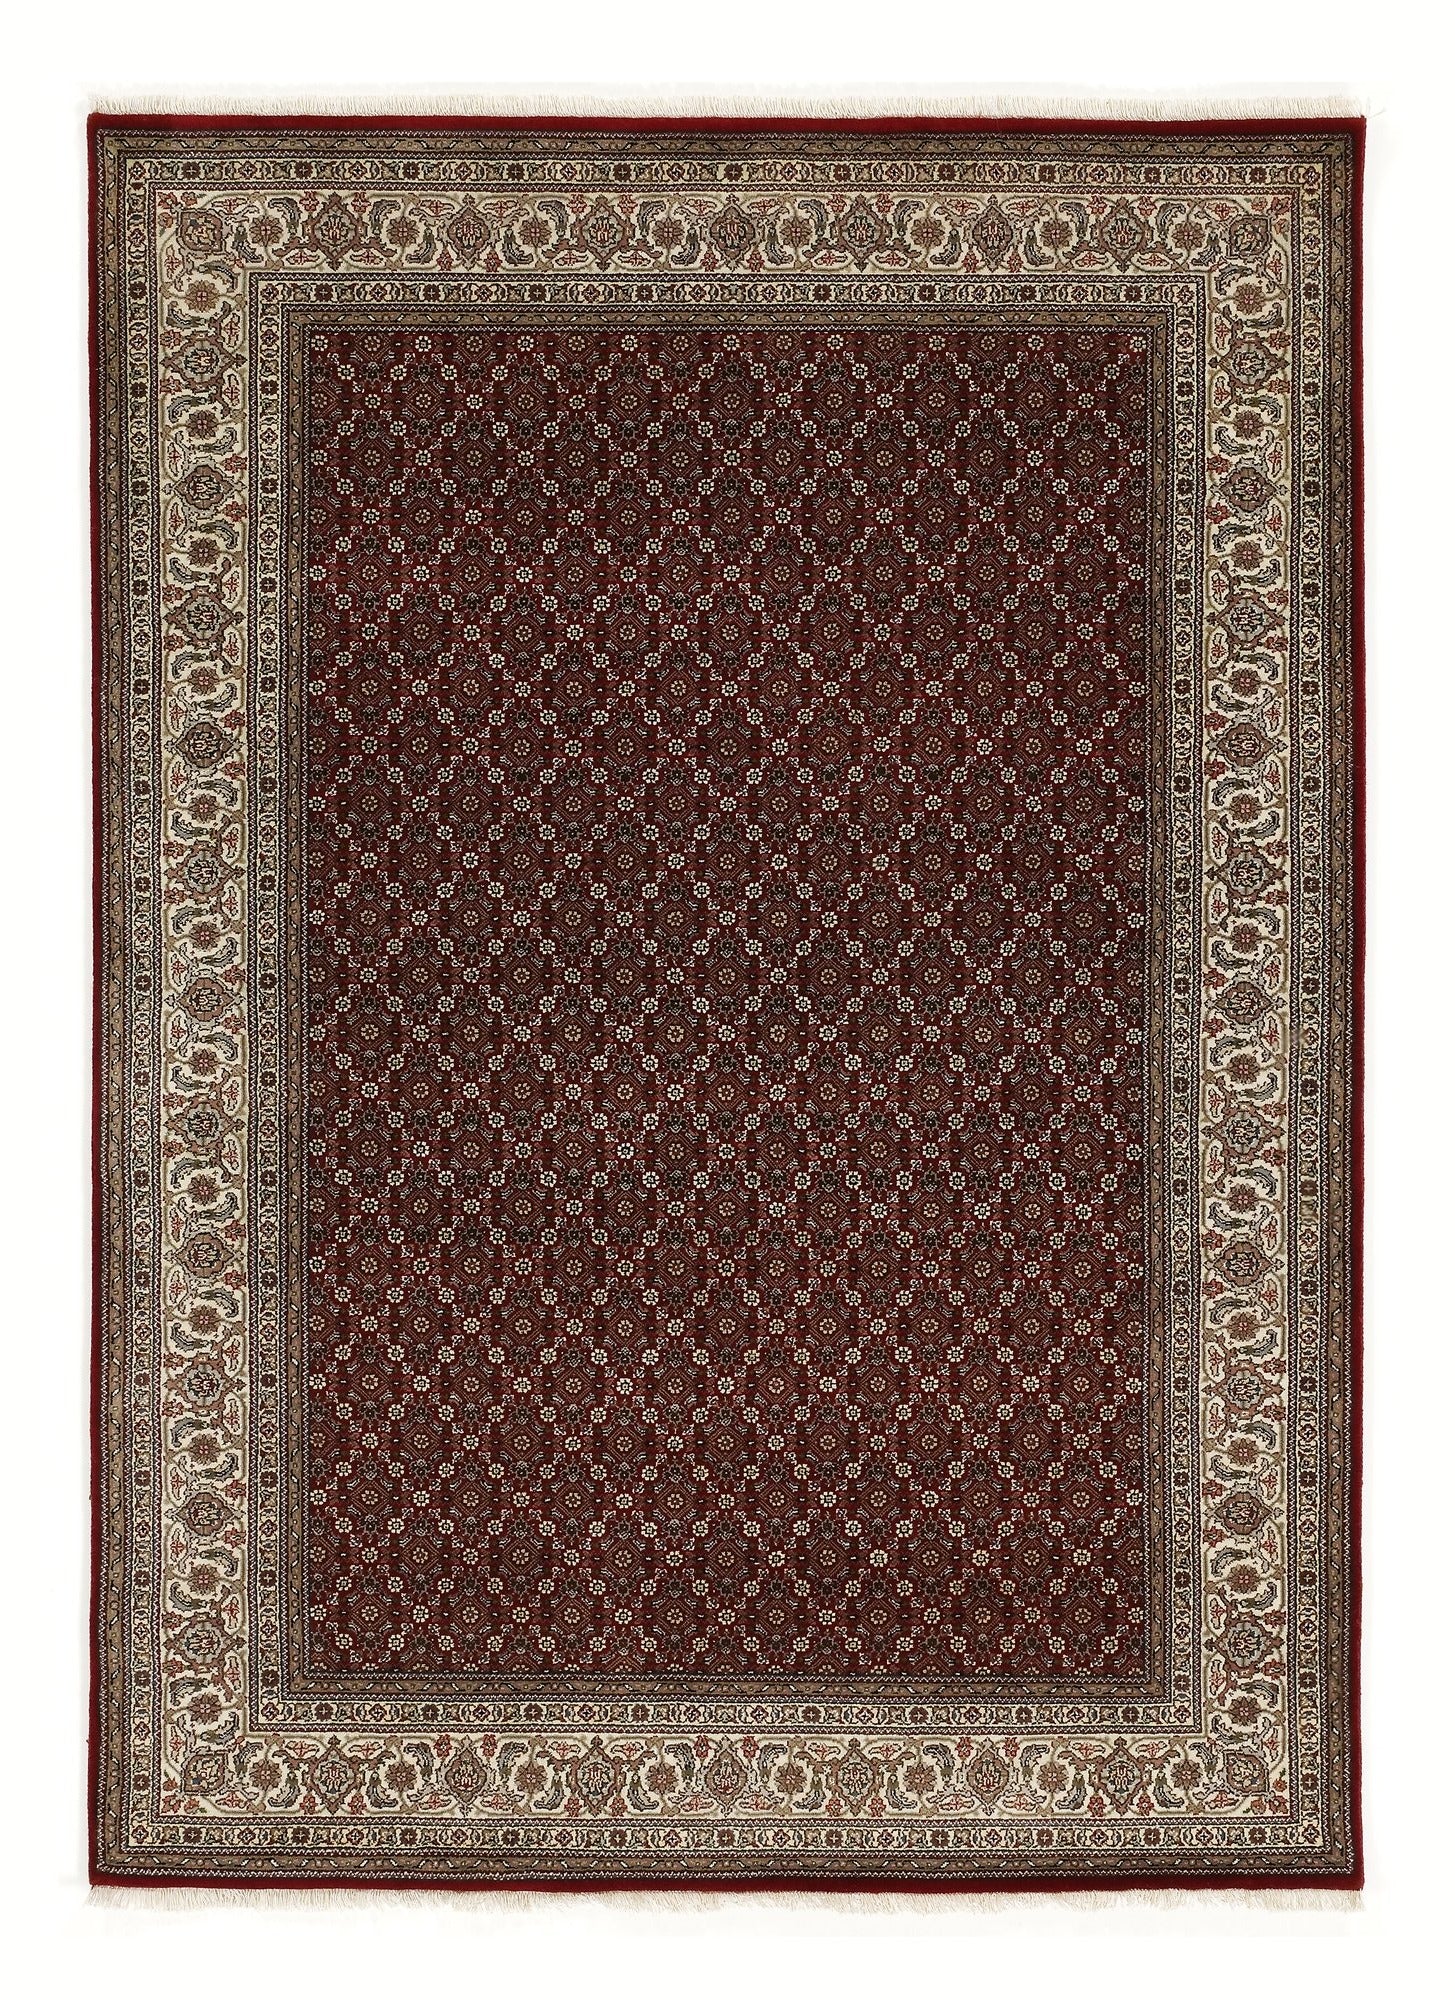 OCI Teppich CAVARI HERATI rot-creme echter klassischer Orient-Teppich handgeknüpft